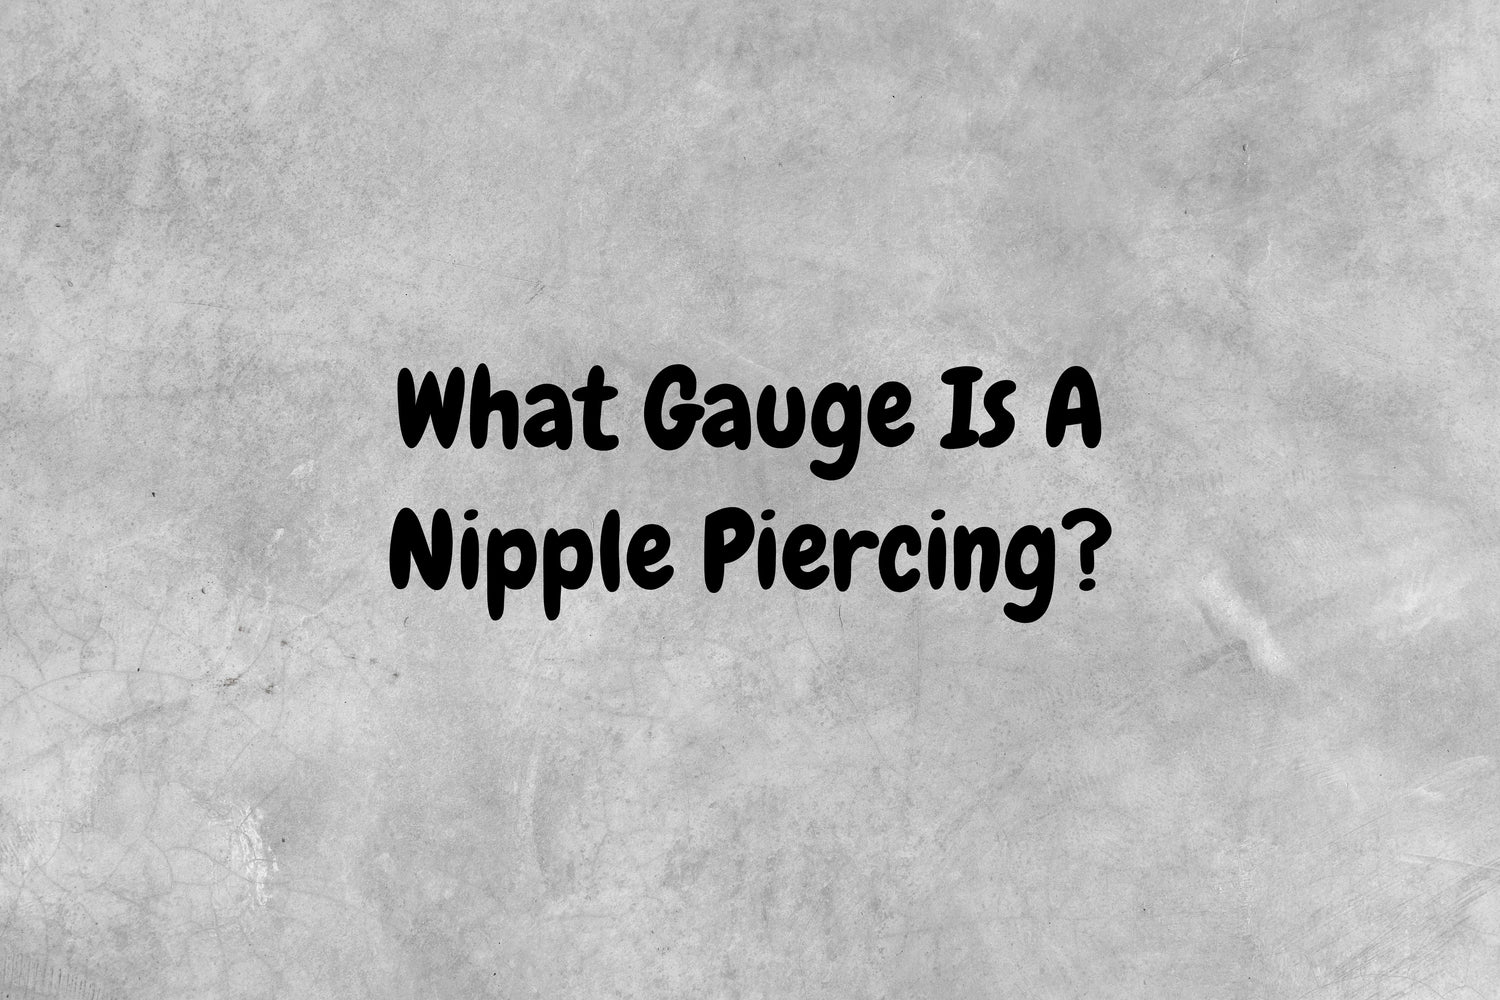 What Gauge Is A Nipple Piercing?